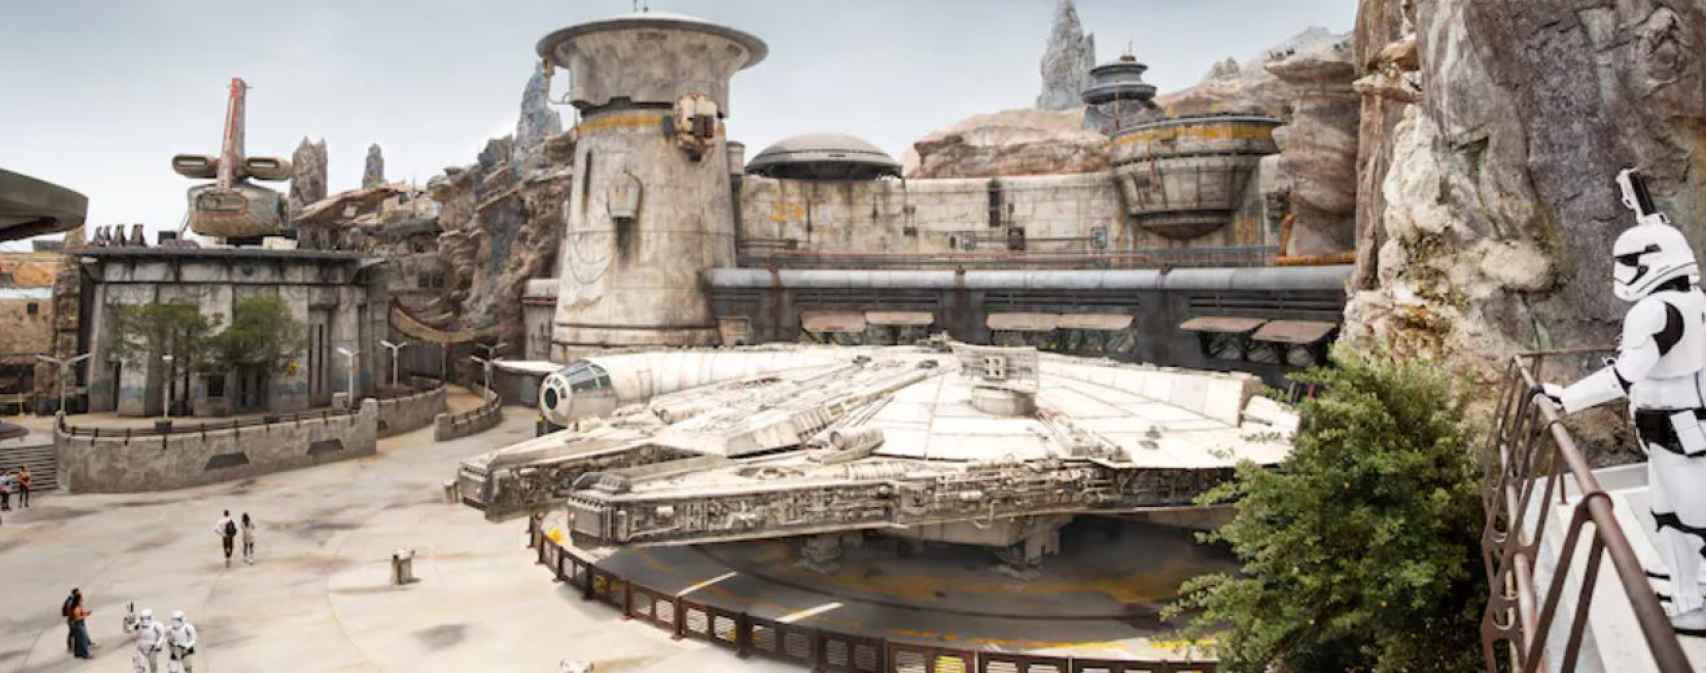 Halcón Milenario en la tierra de Star Wars del parque de Disneyland en Orlando.